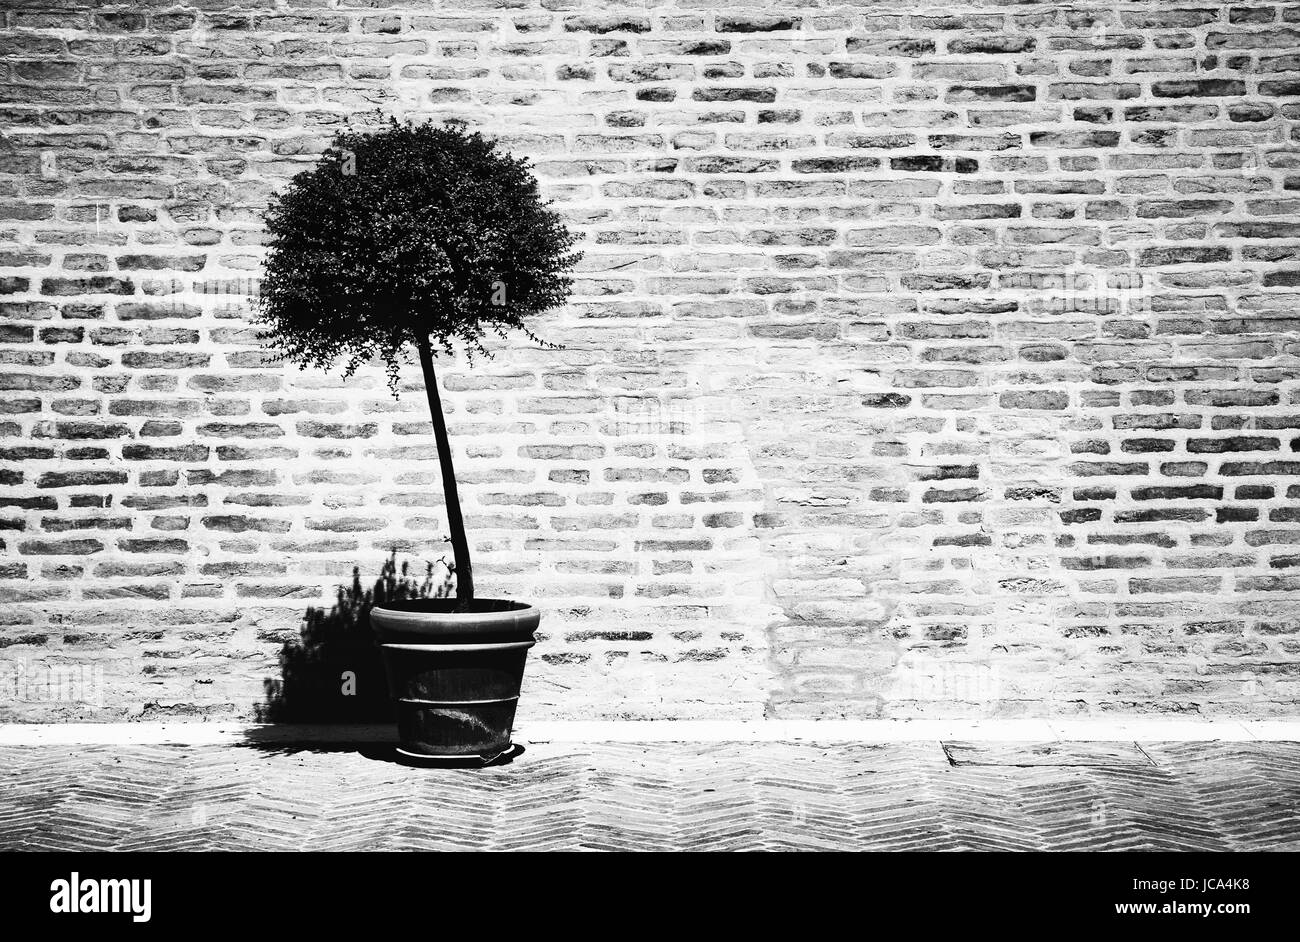 Baum in einem Blumentopf auf Ziegel Wand Hintergrund. Kontrast Schwarz / weiß-Film-Stil-Farben. Stockfoto